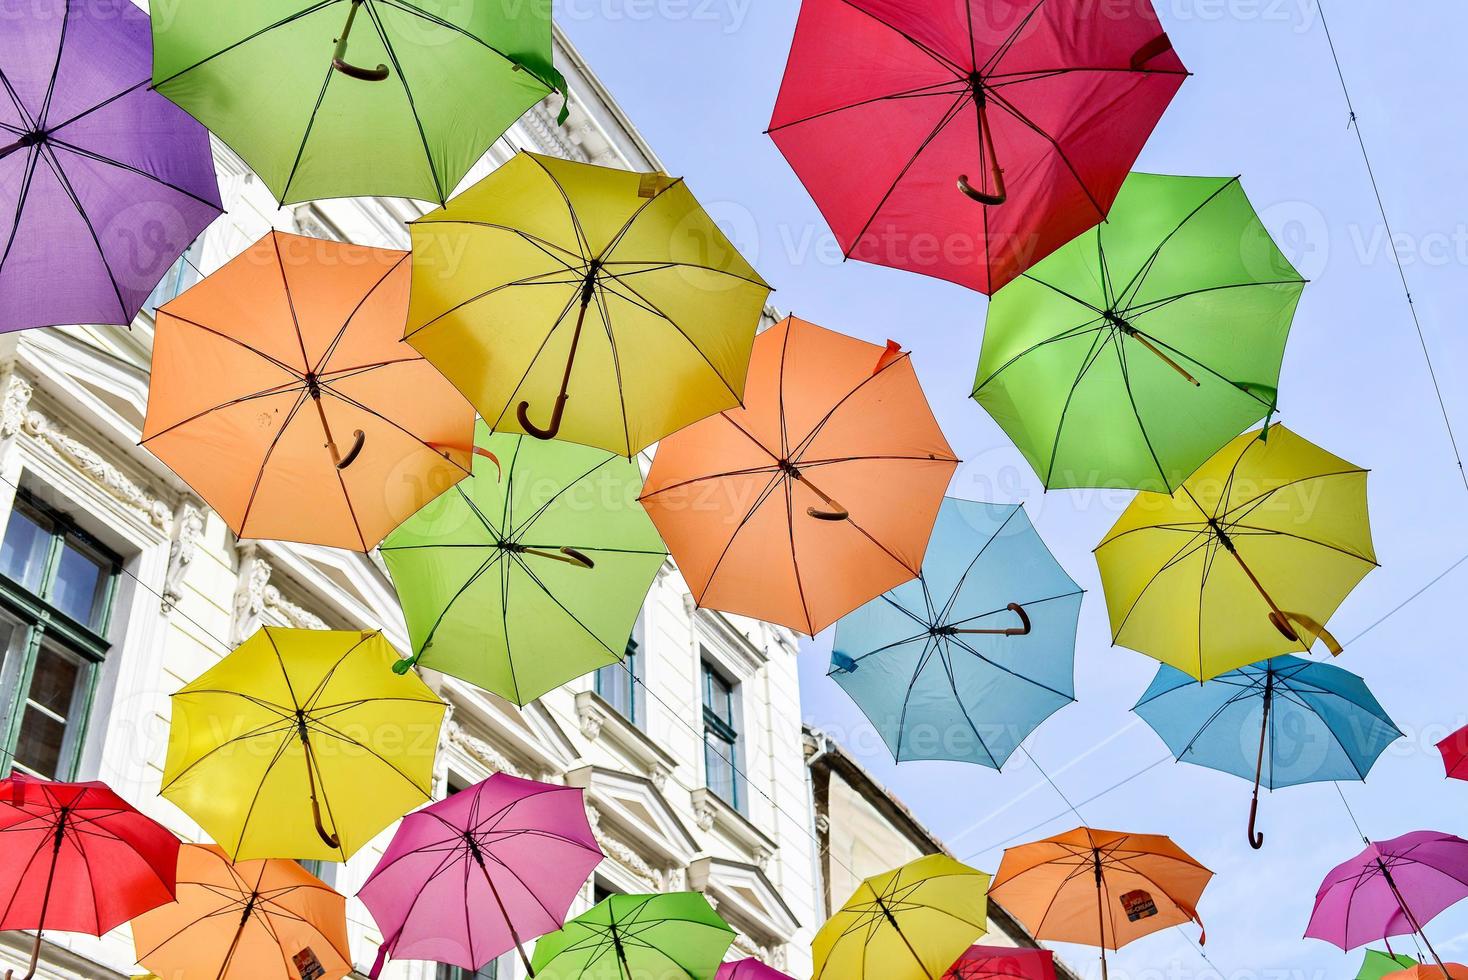 paraguas de colores colgado en las calles de la ciudad foto